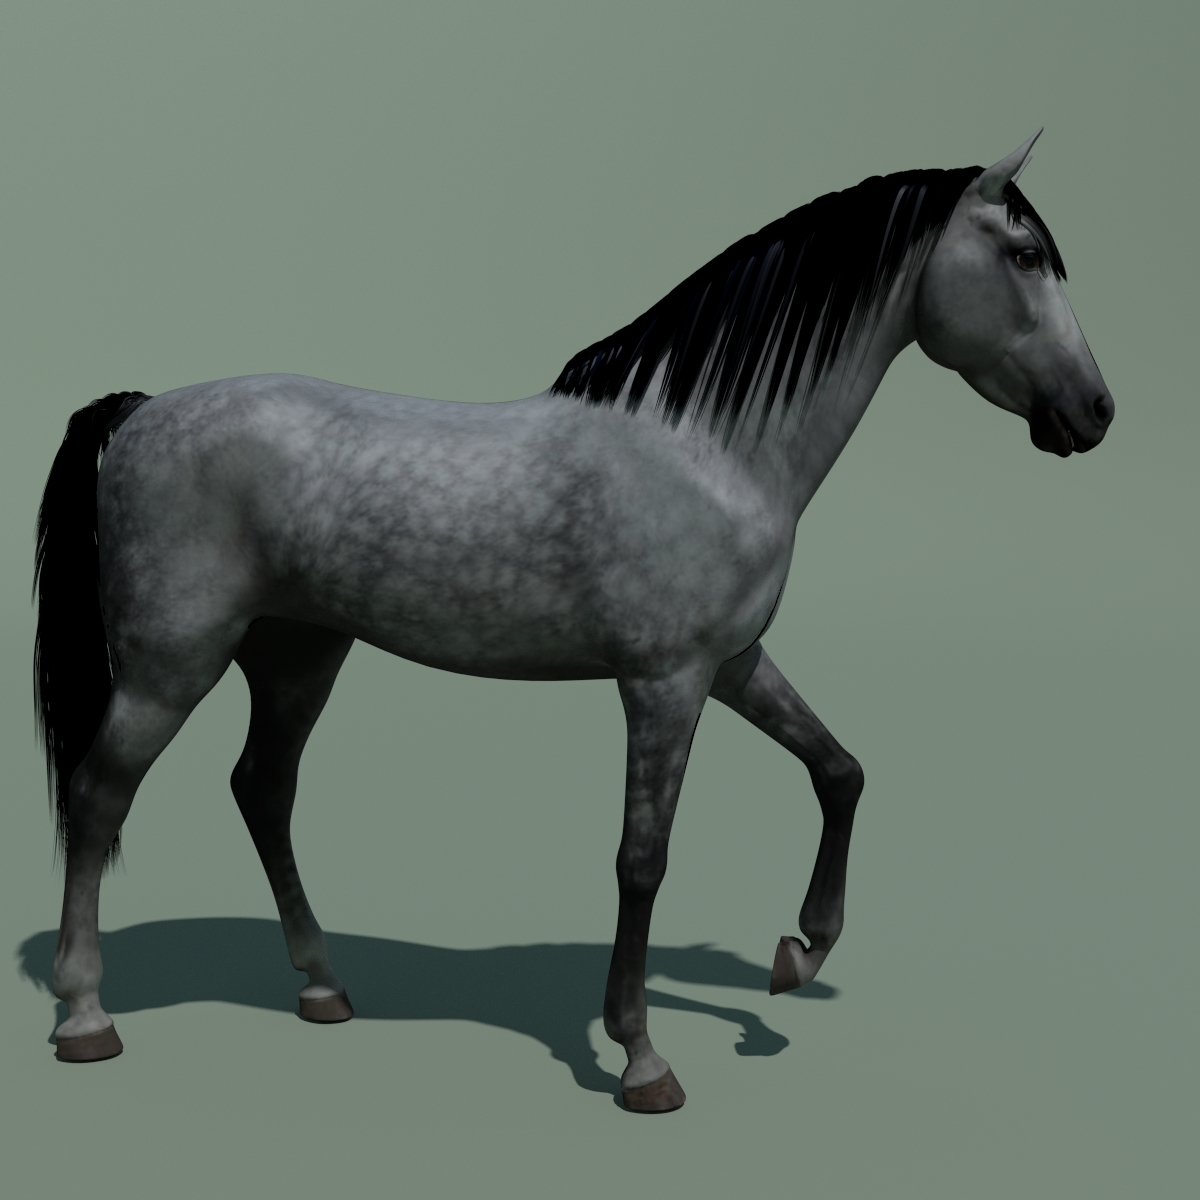 3d horse model blender free download